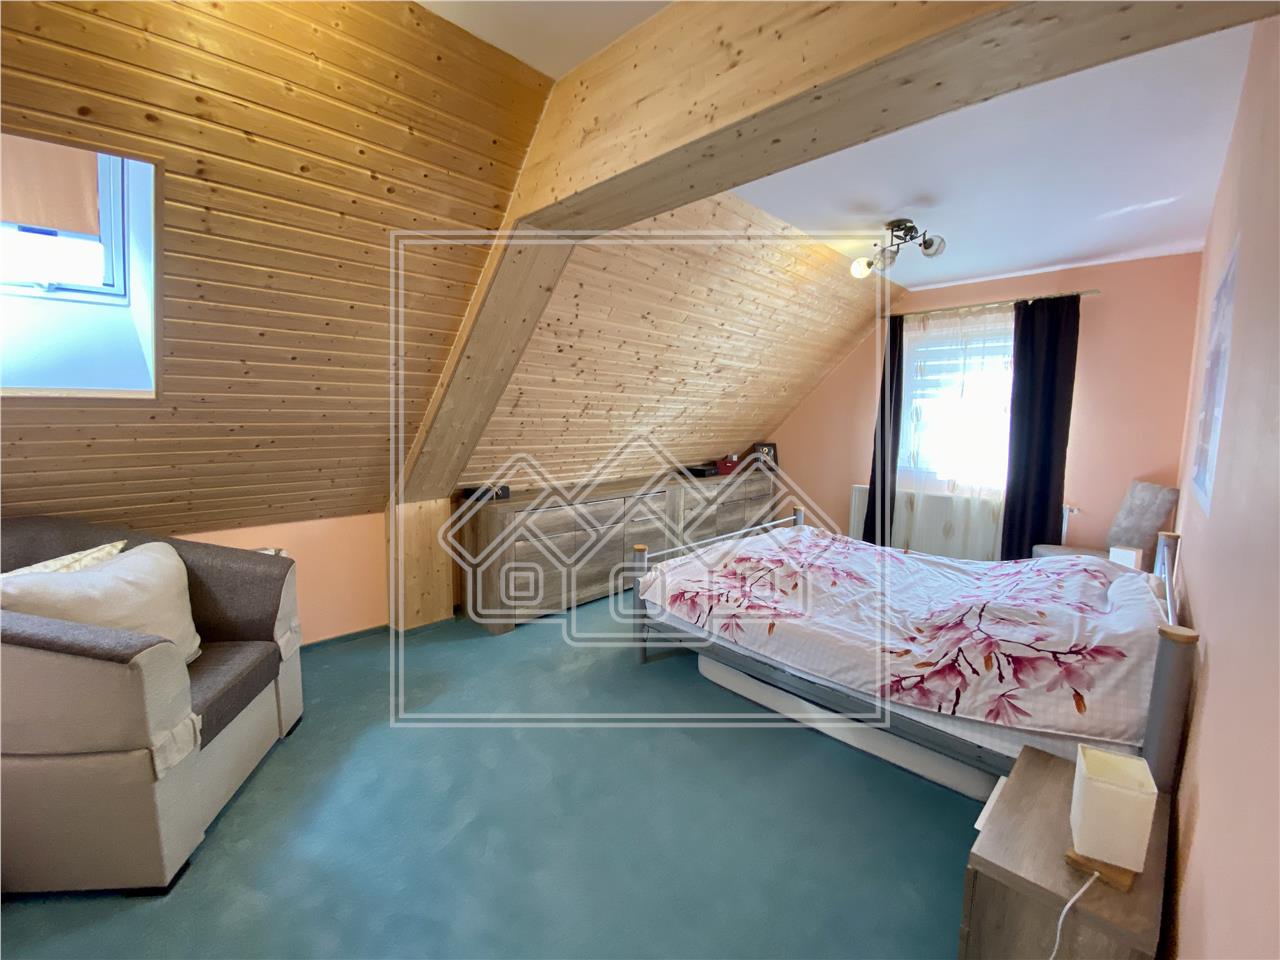 Casa de vanzare in Sibiu - individuala - 5 camere, garaj- teren 685 mp